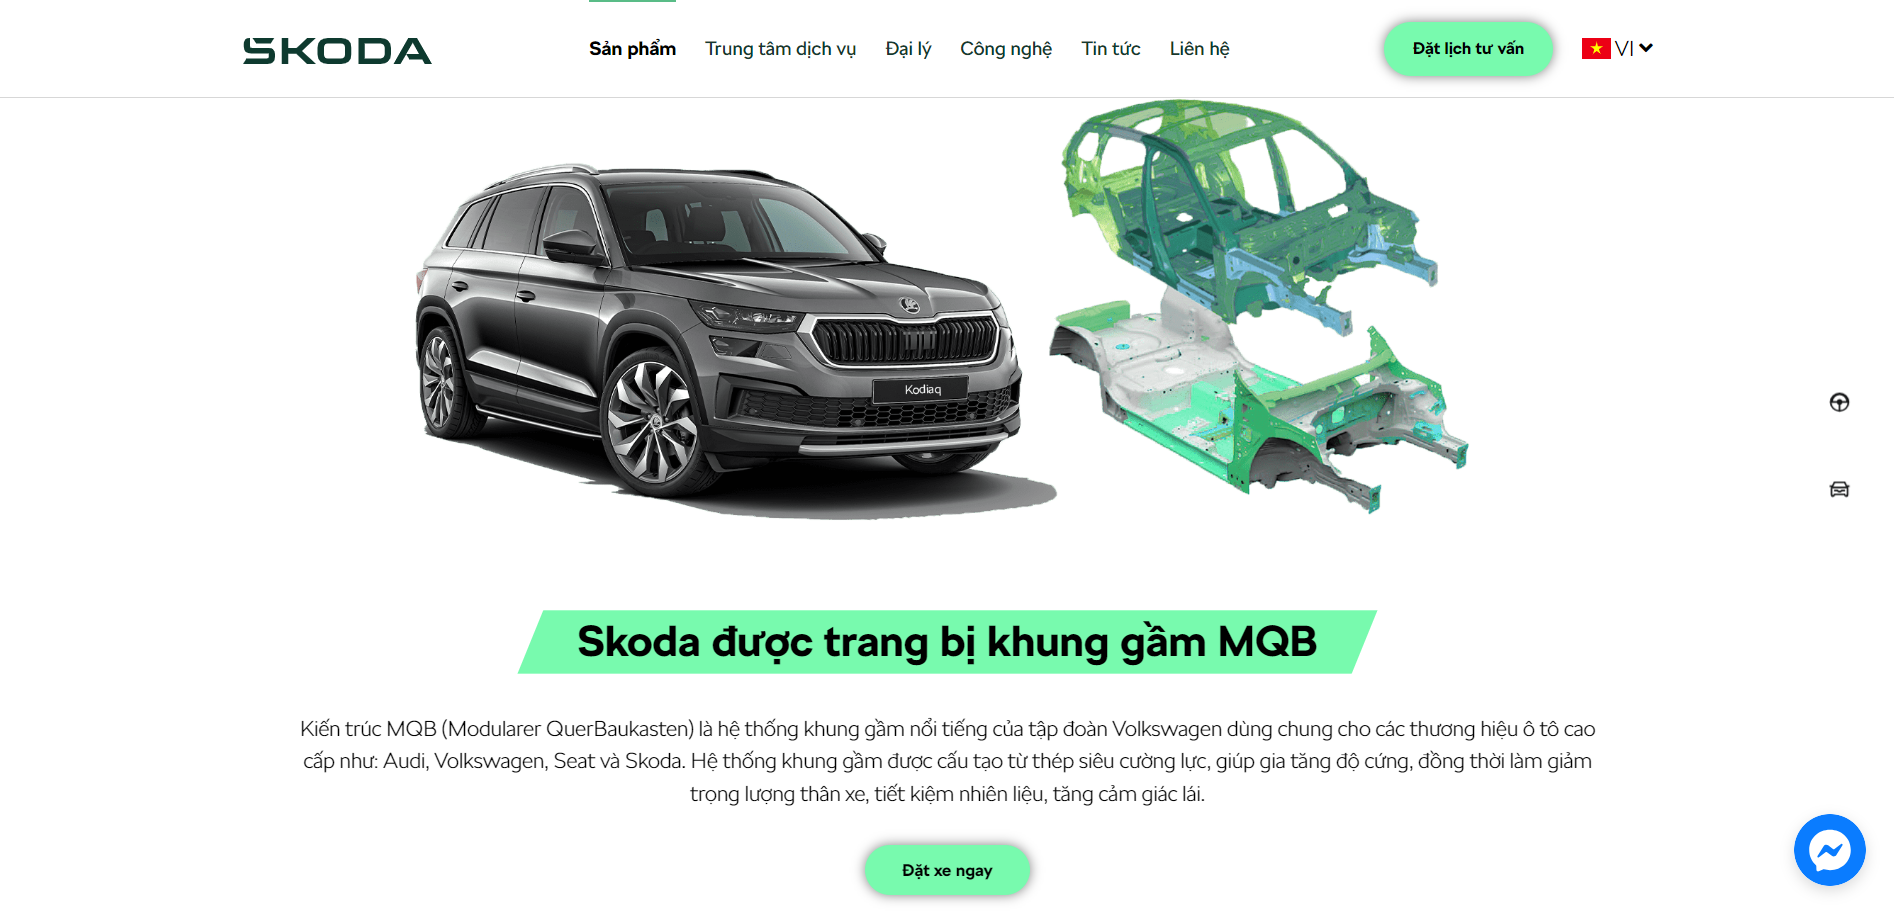 Skoda - thương hiệu xe đến từ châu Âu sắp được bán tại Việt Nam có gì khác biệt?